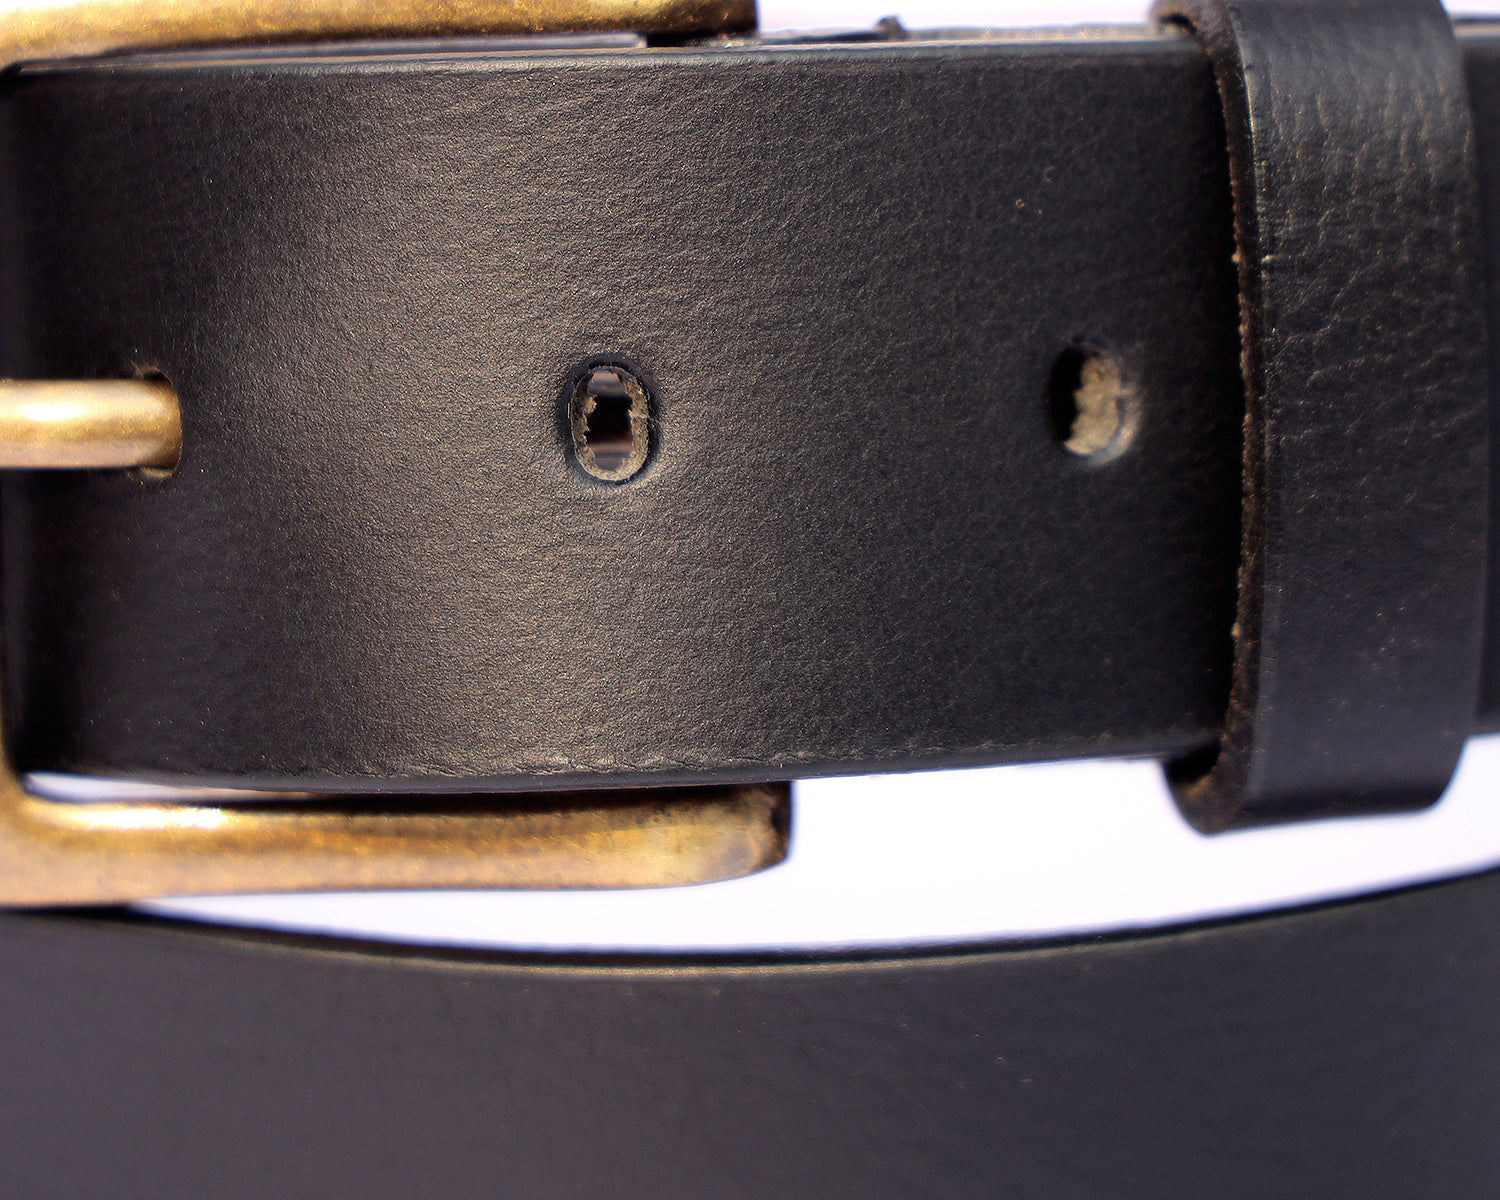 Mens Black Leather Belt With Gold Buckle - BELT DESIGNS